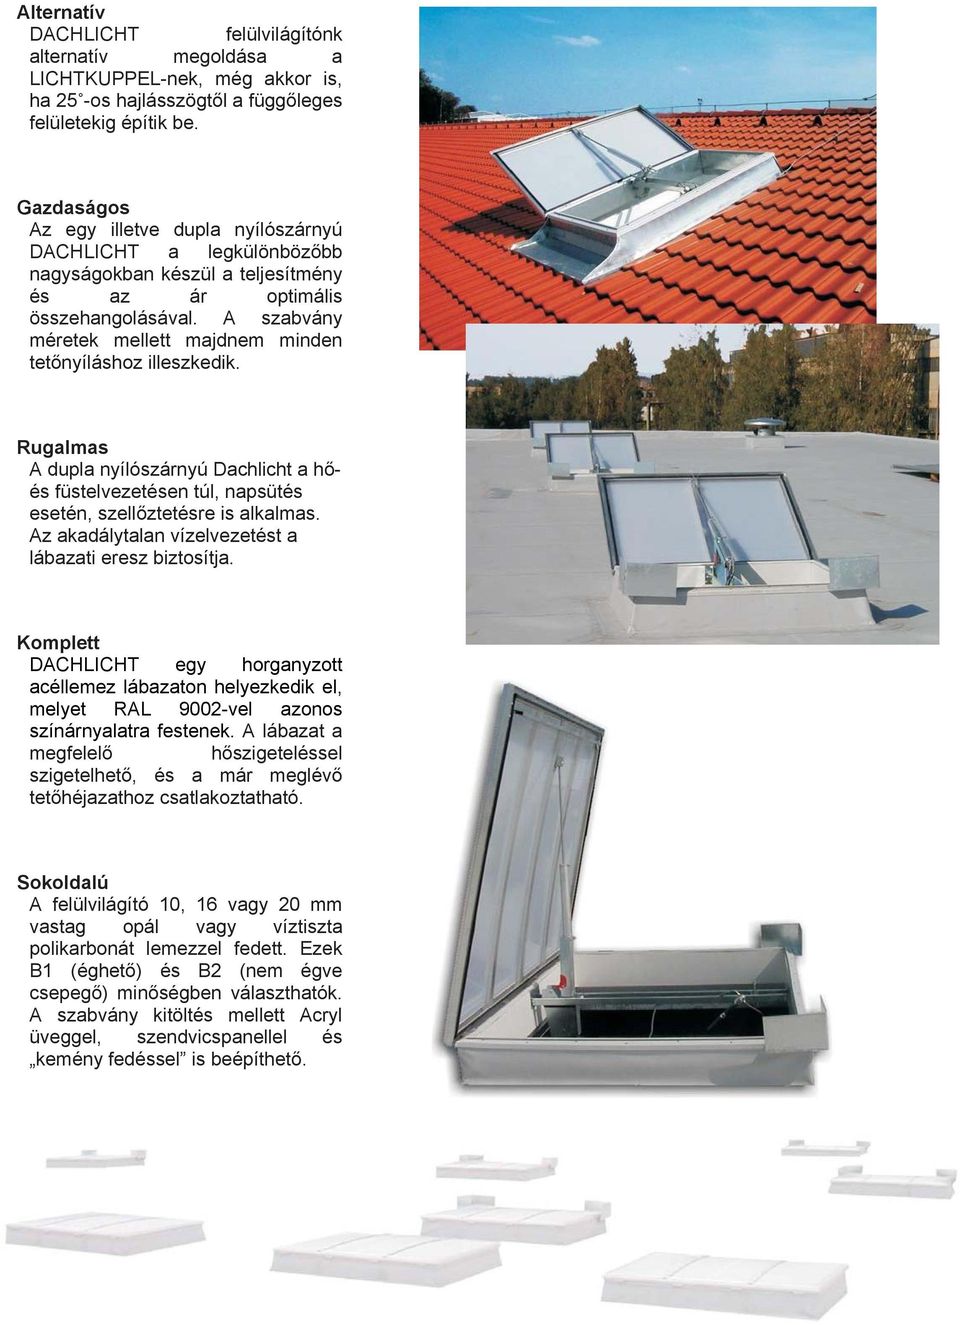 A szabvány méretek mellett majdnem minden tetőnyíláshoz illeszkedik. Rugalmas A dupla nyílószárnyú Dachlicht a hőés füstelvezetésen túl, napsütés esetén, szellőztetésre is alkalmas.